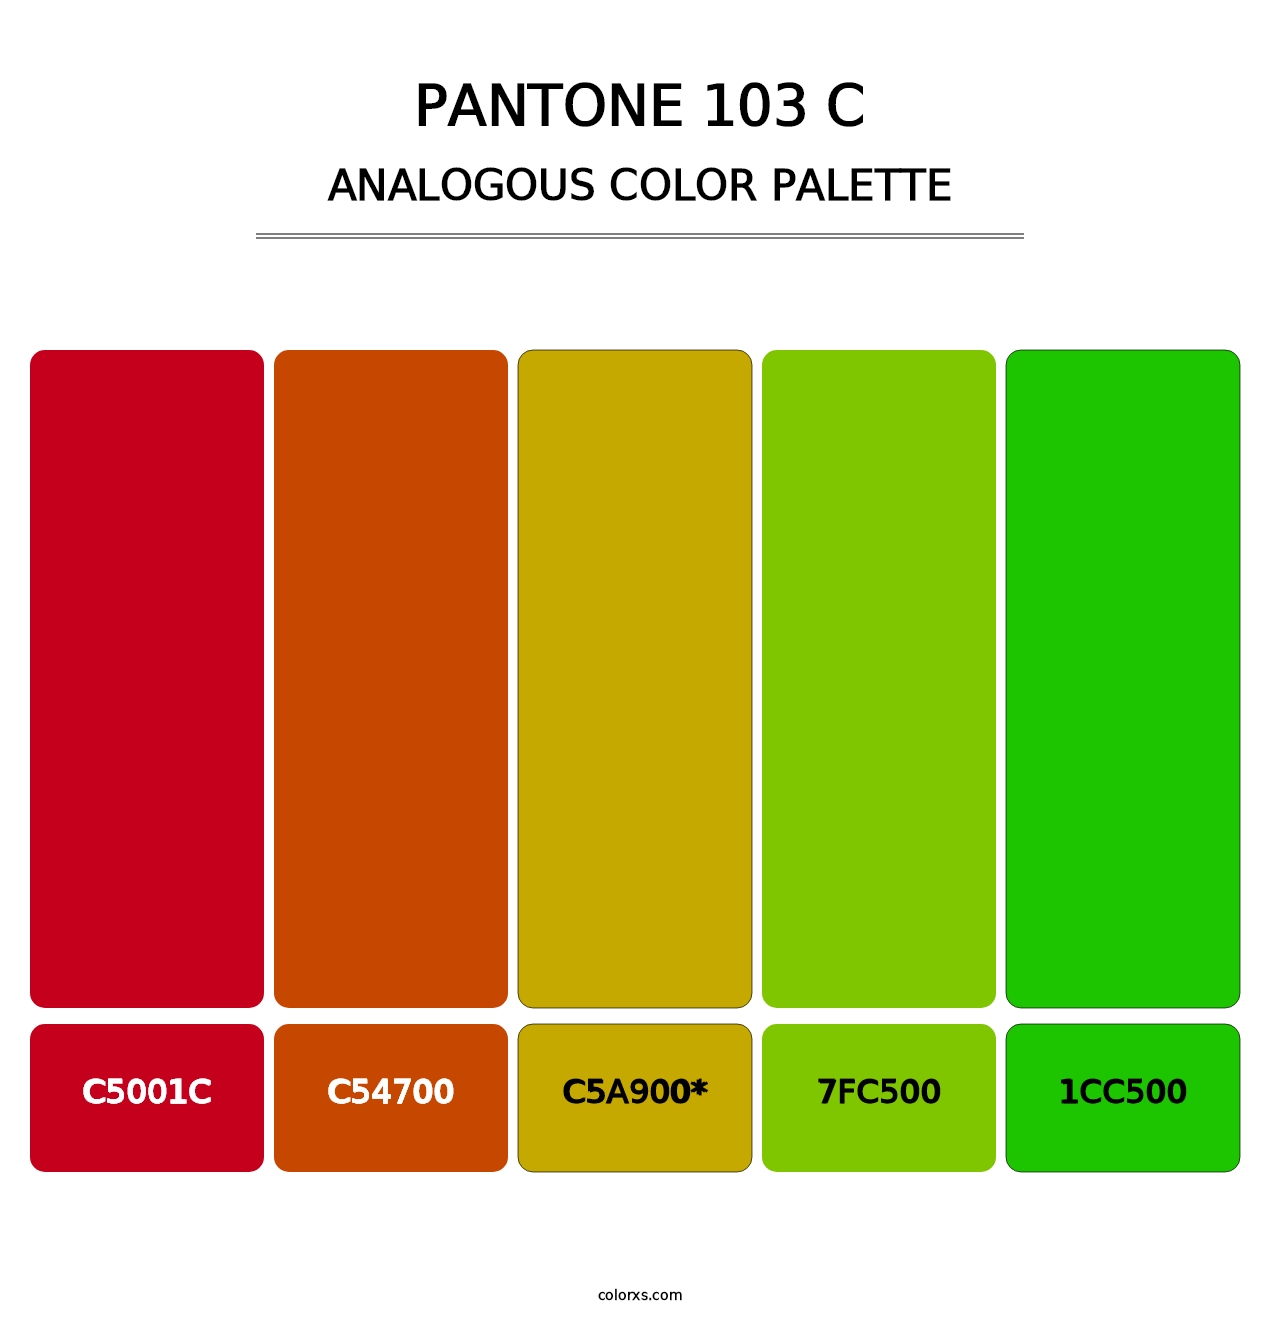 PANTONE 103 C - Analogous Color Palette